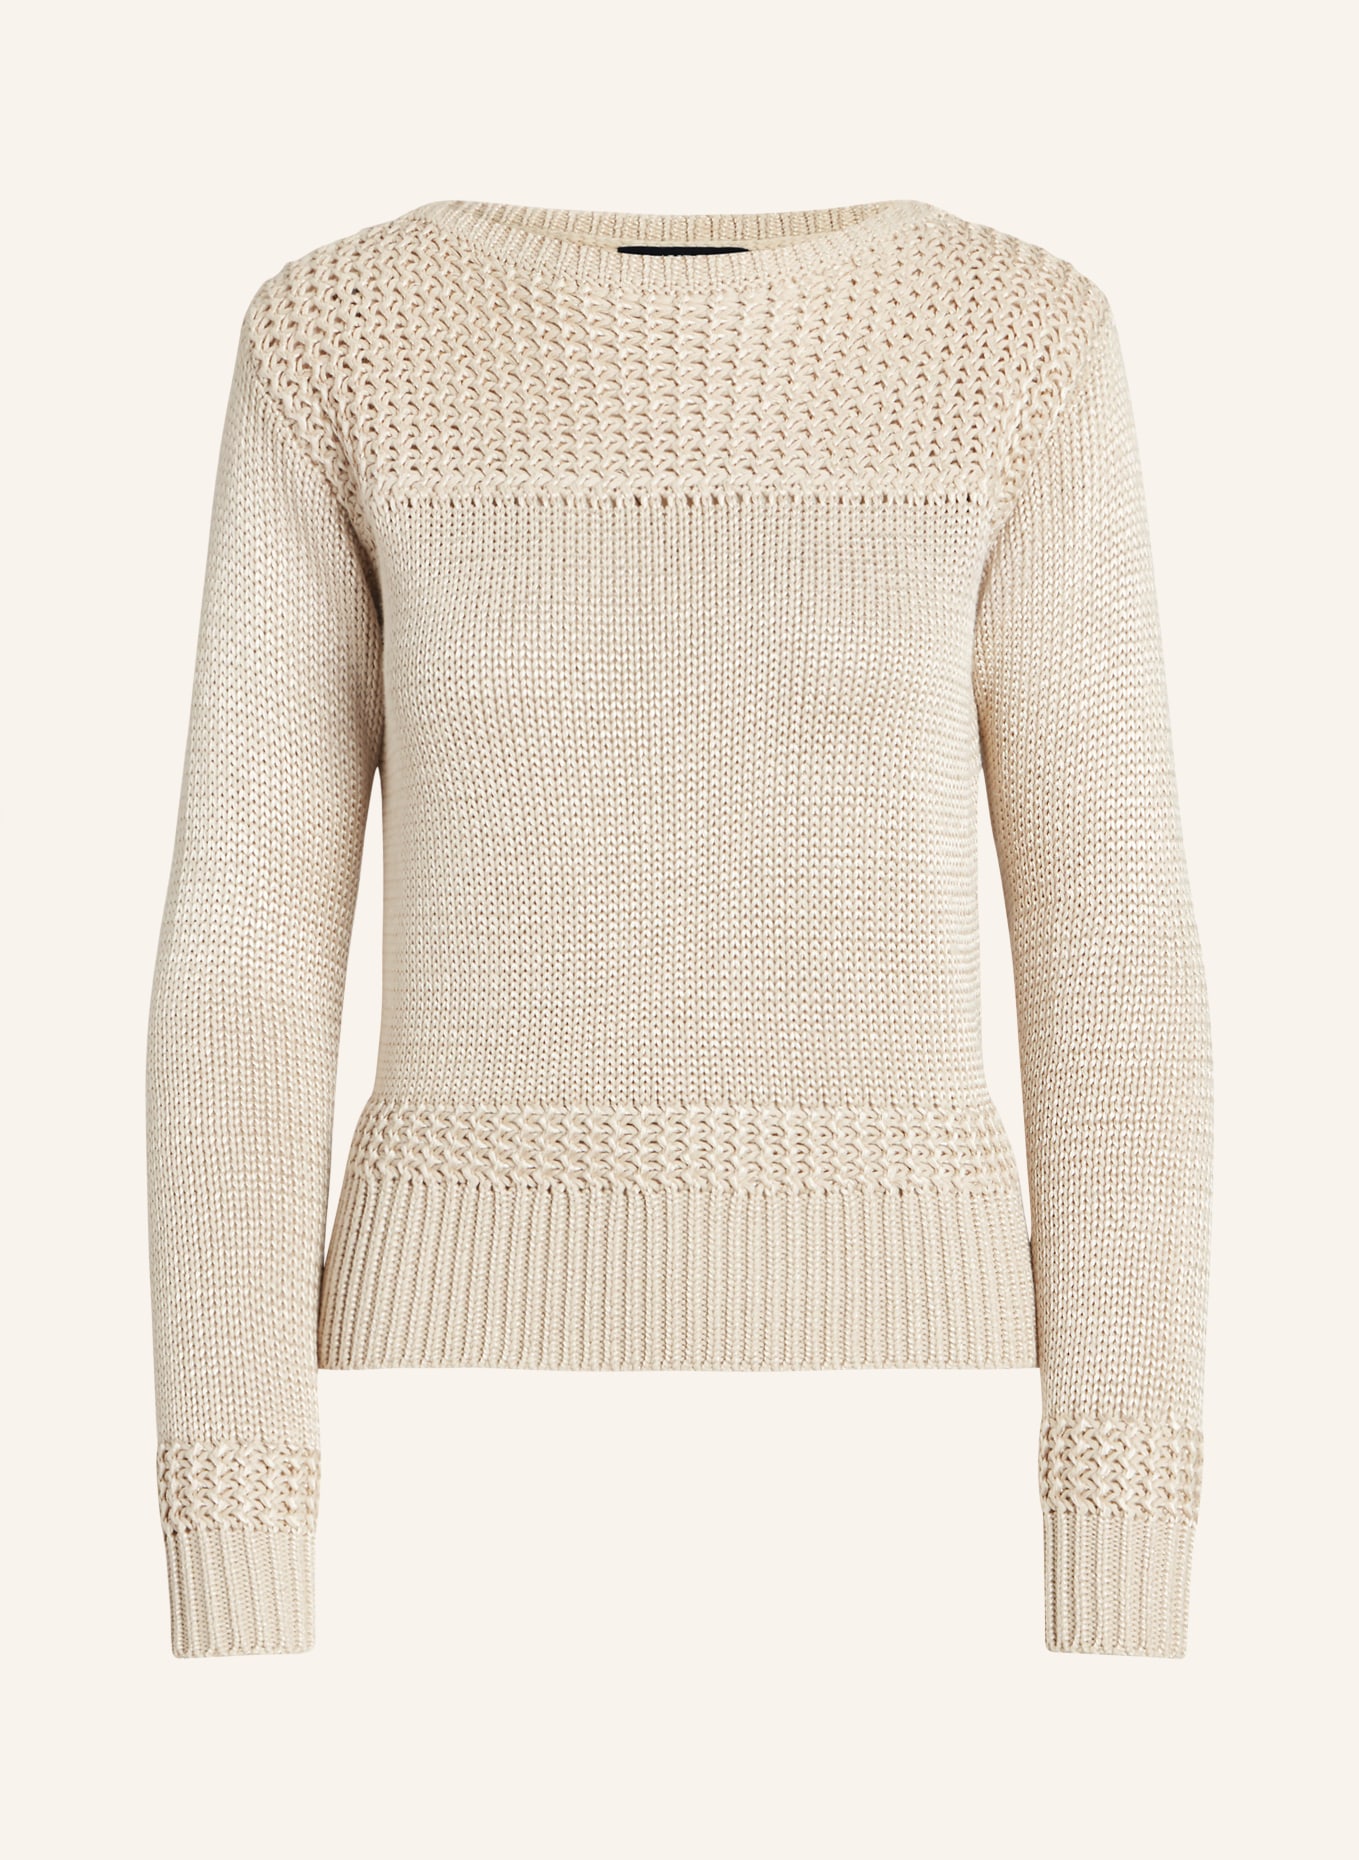 LAUREN RALPH LAUREN Sweater, Color: BEIGE (Image 1)